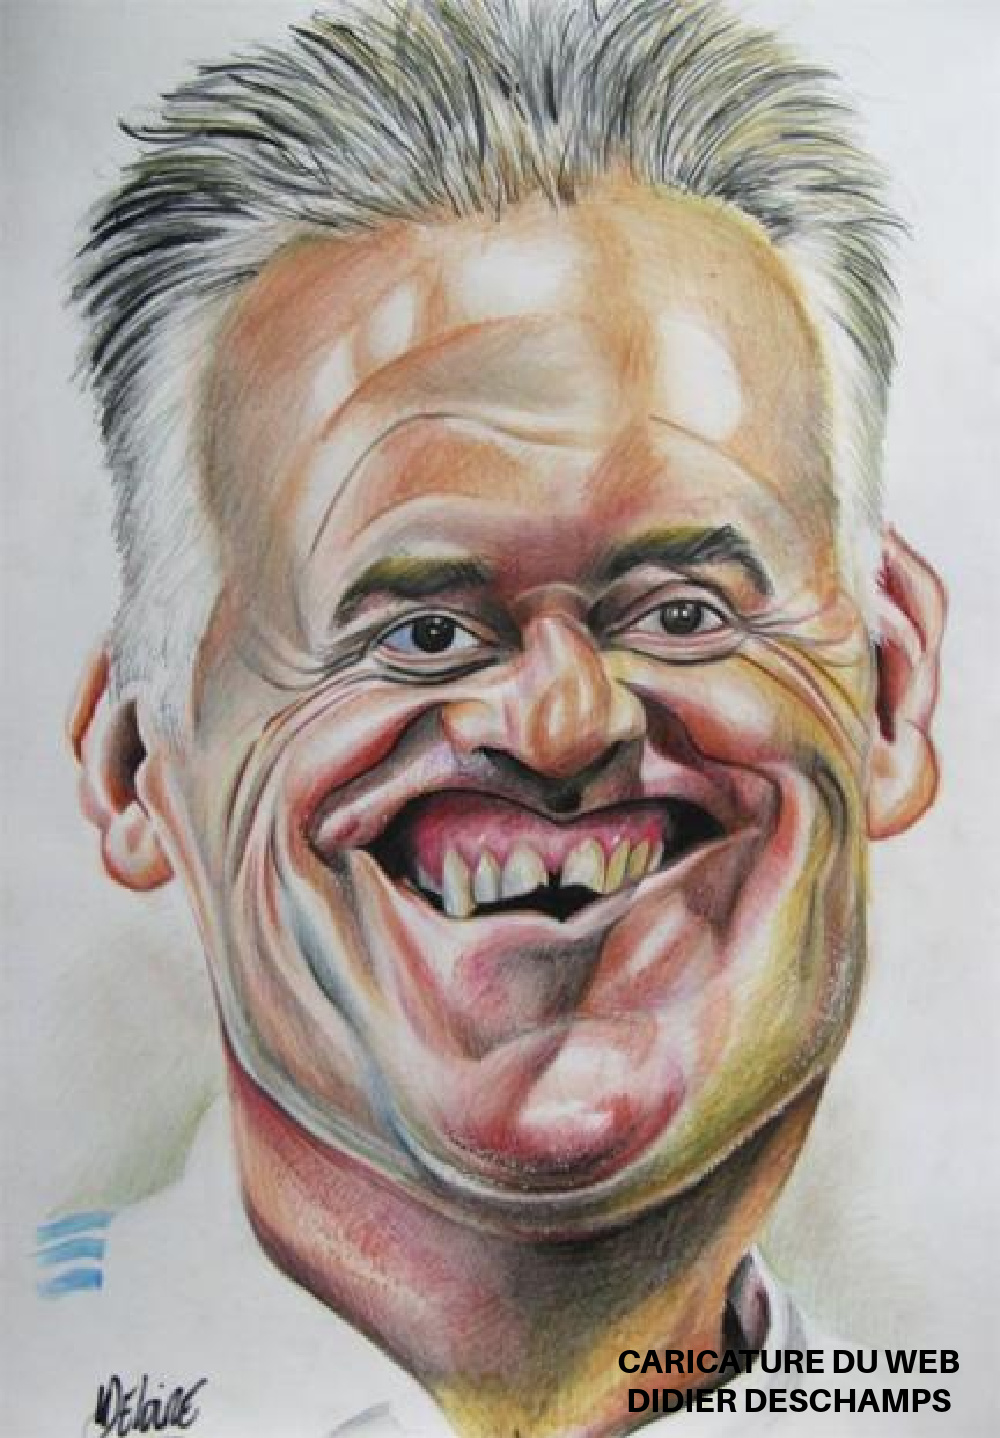 AW26. Portrait - Caricature du Web Didier Deschamps